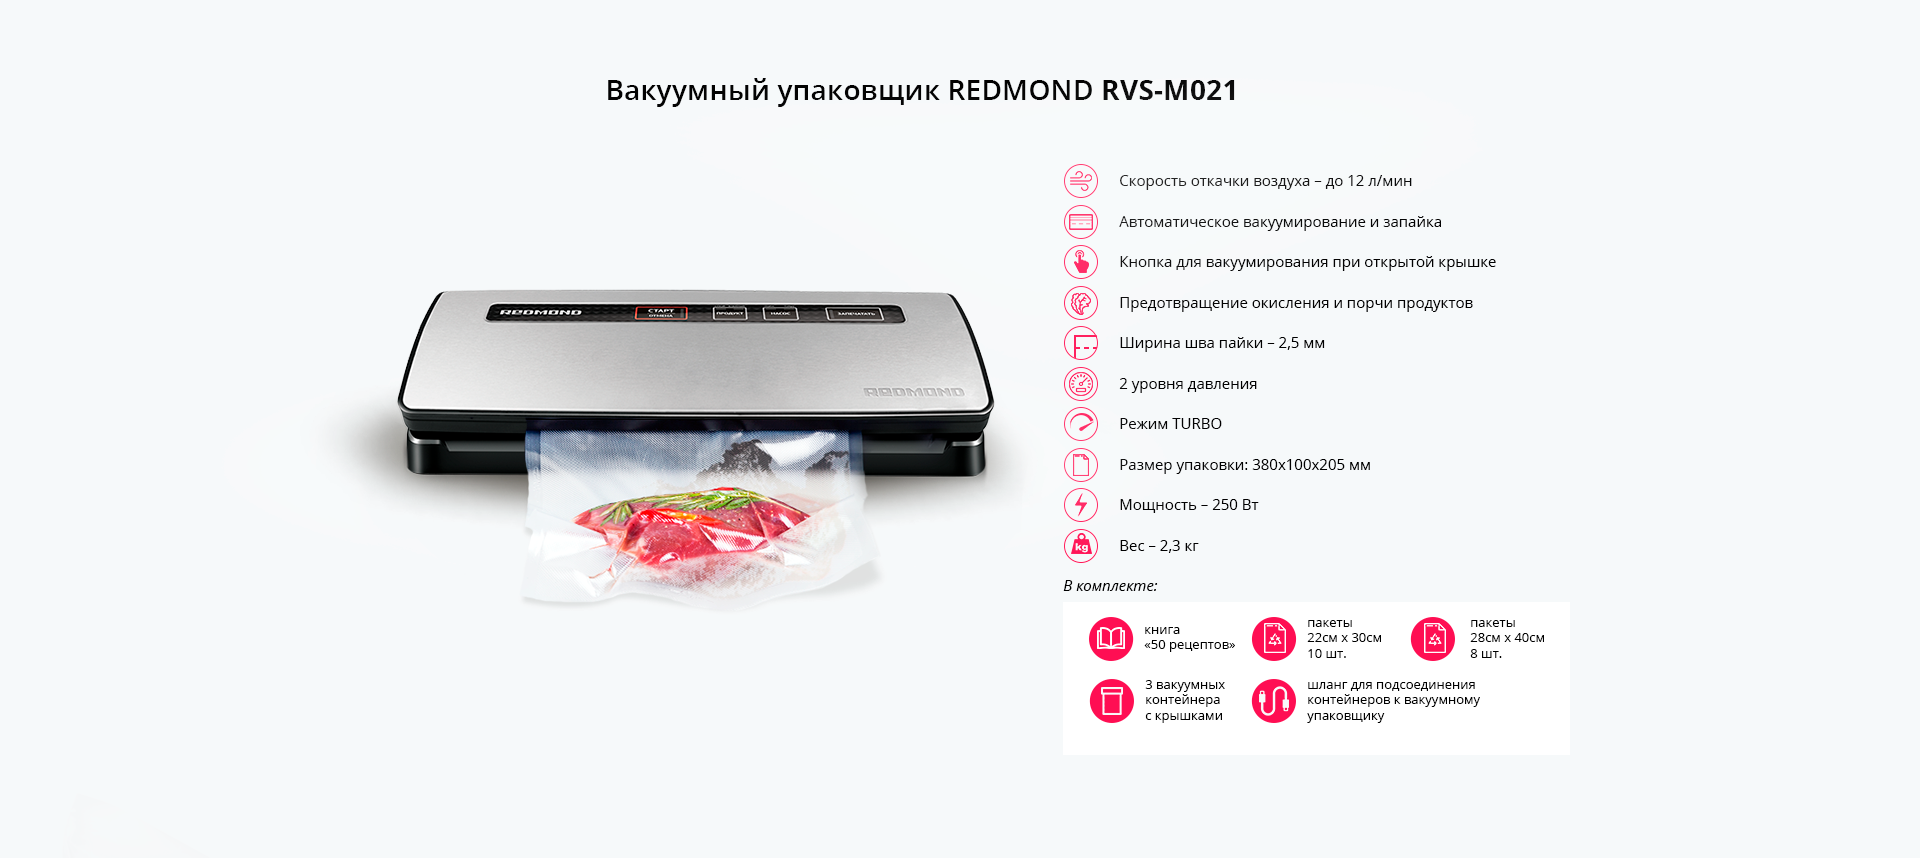 Вакуумный упаковщик REDMOND RVS-M021:  , СПб, России .